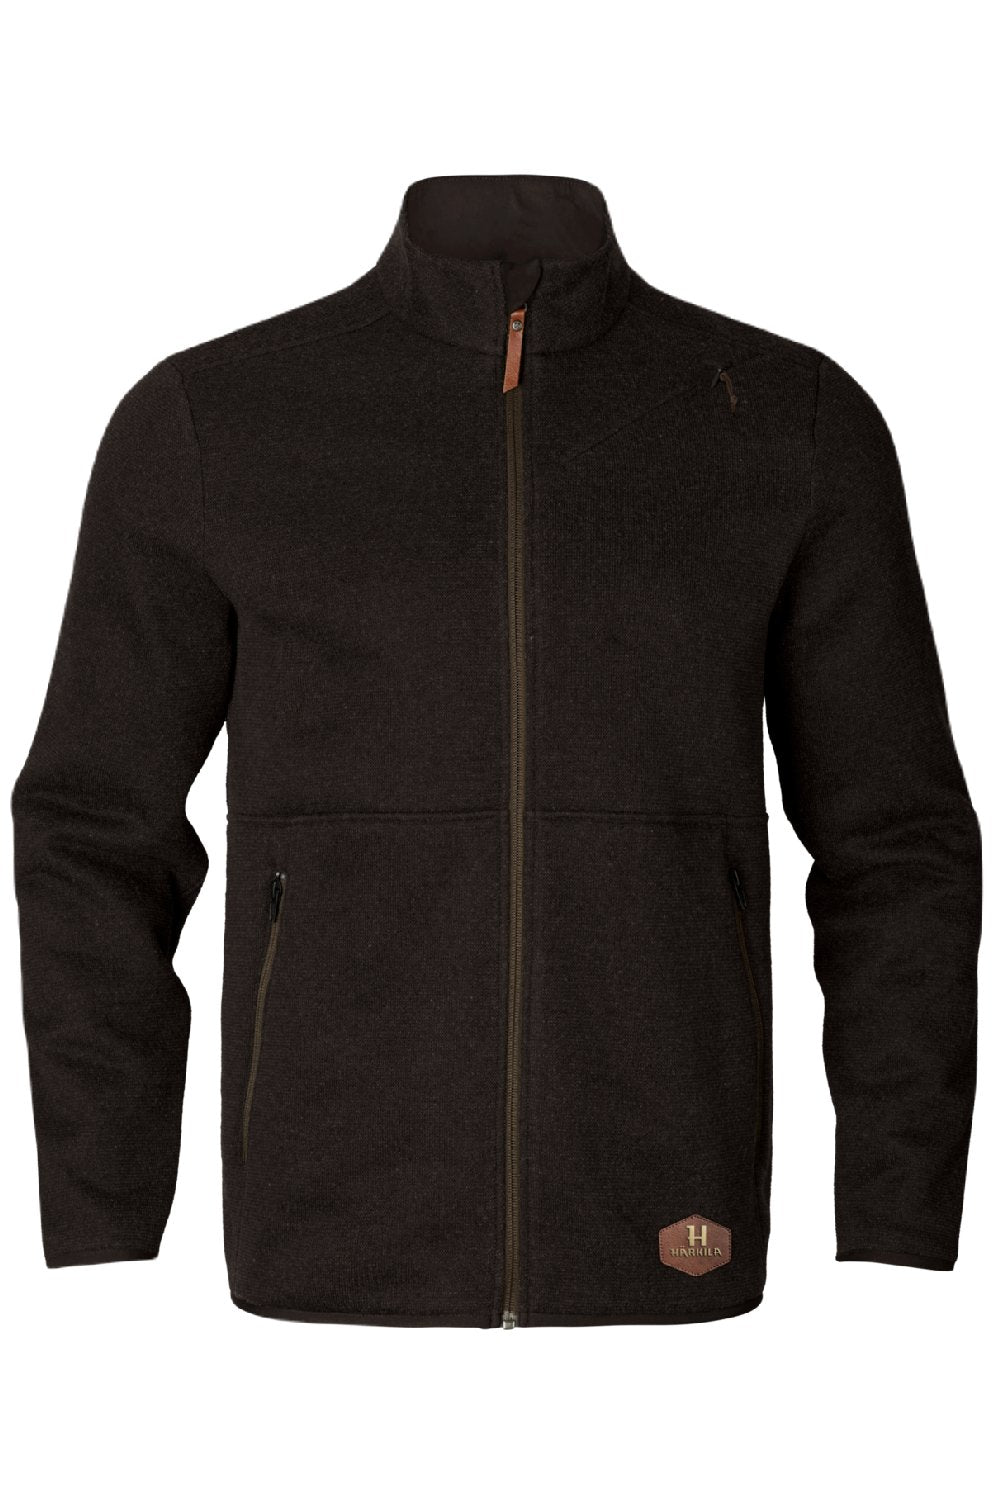 Harkila Metso Full Zip Fleece Jacket in Shadow Brown 